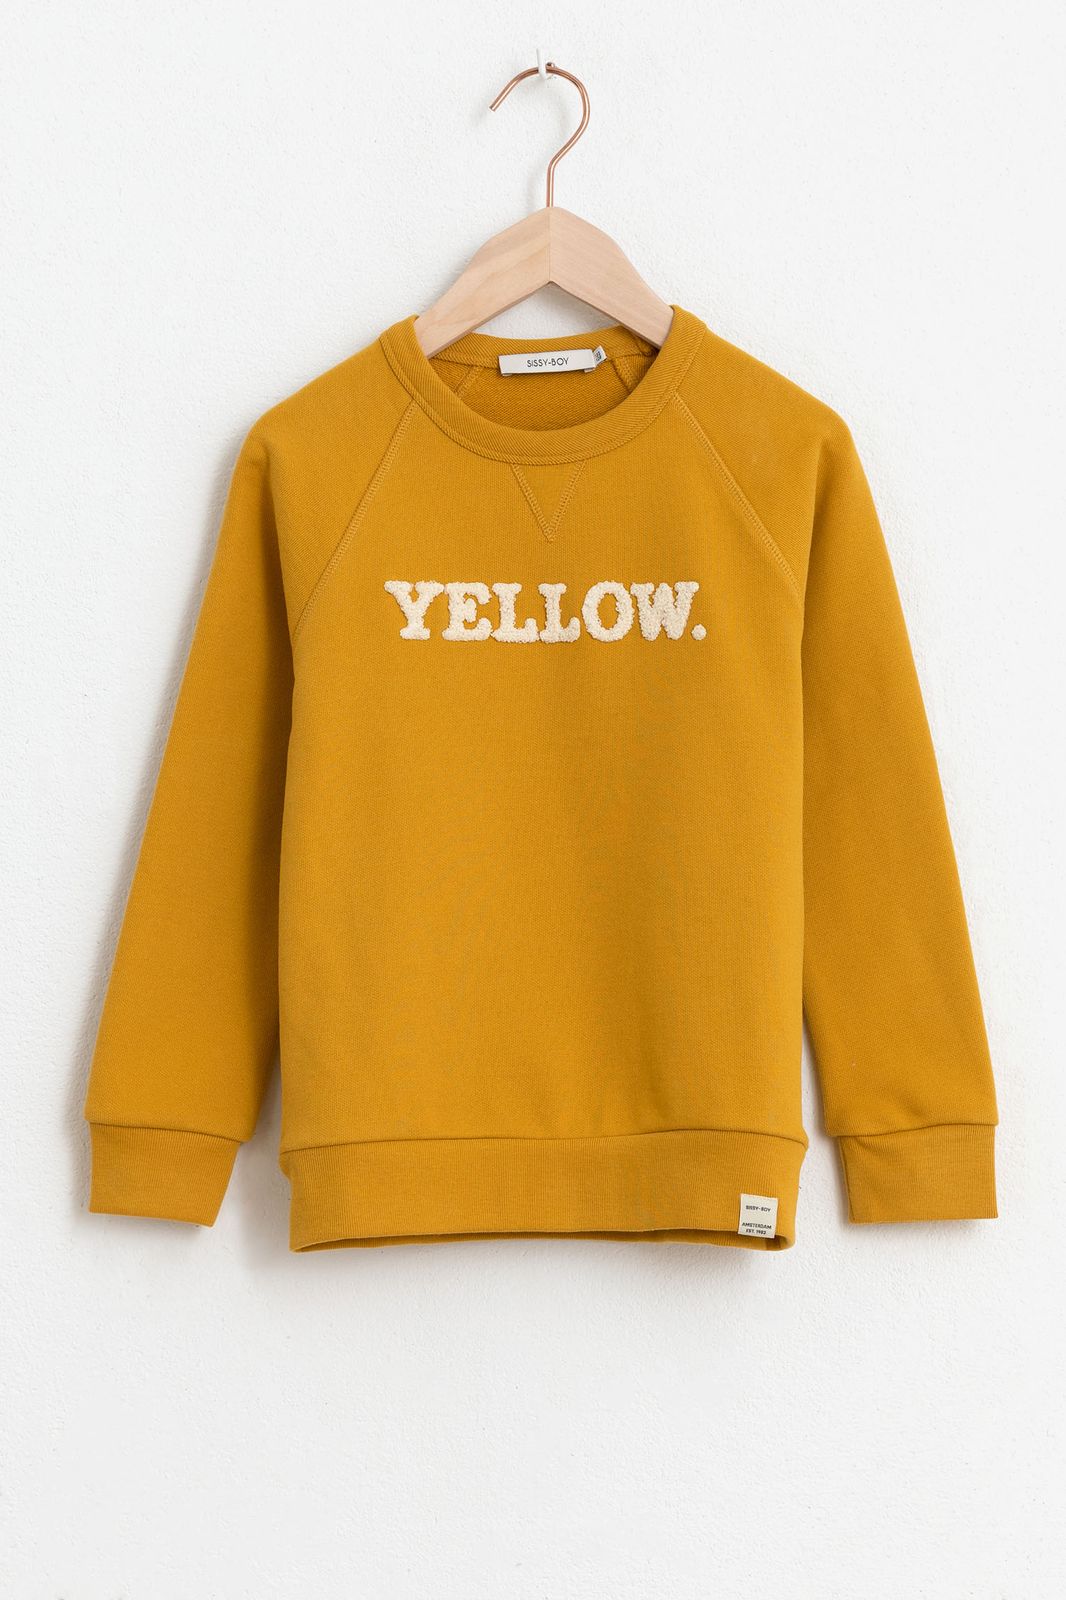 Gelber Sweater mit Aufschrift